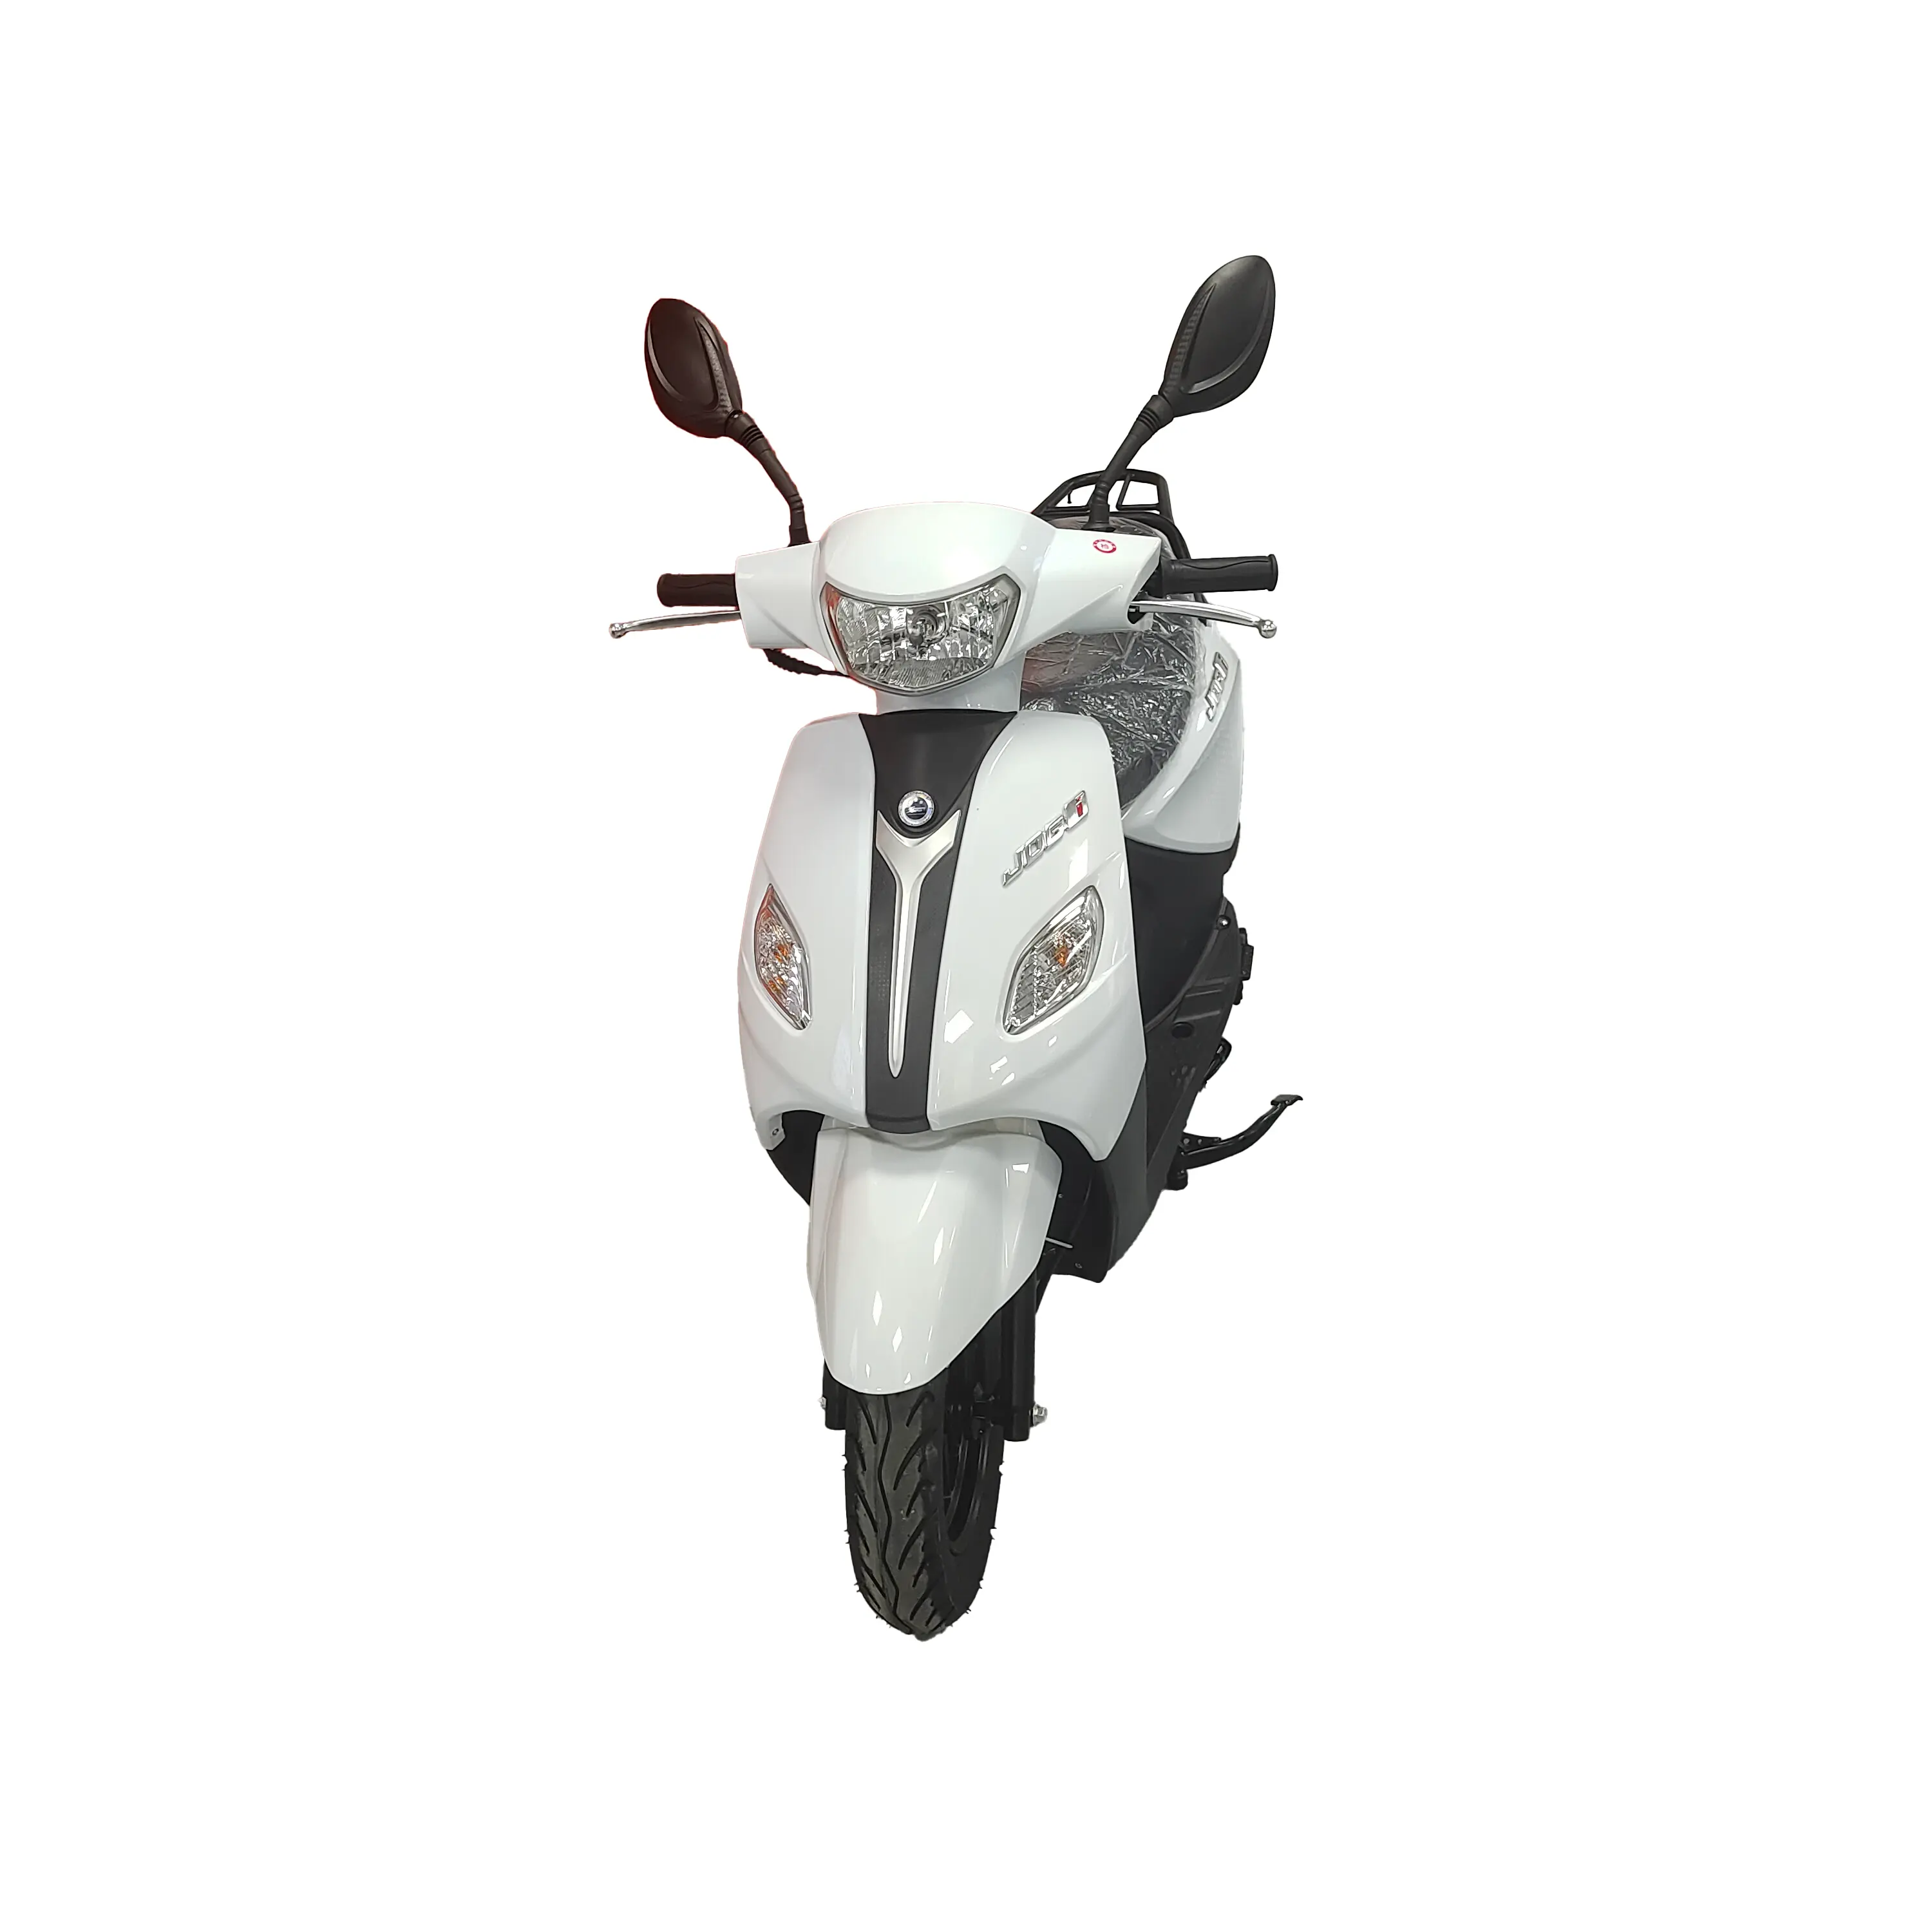 Dernier prix promotionnel Euro 4/EEC/COC moto à essence européenne 150CC scooter à gaz